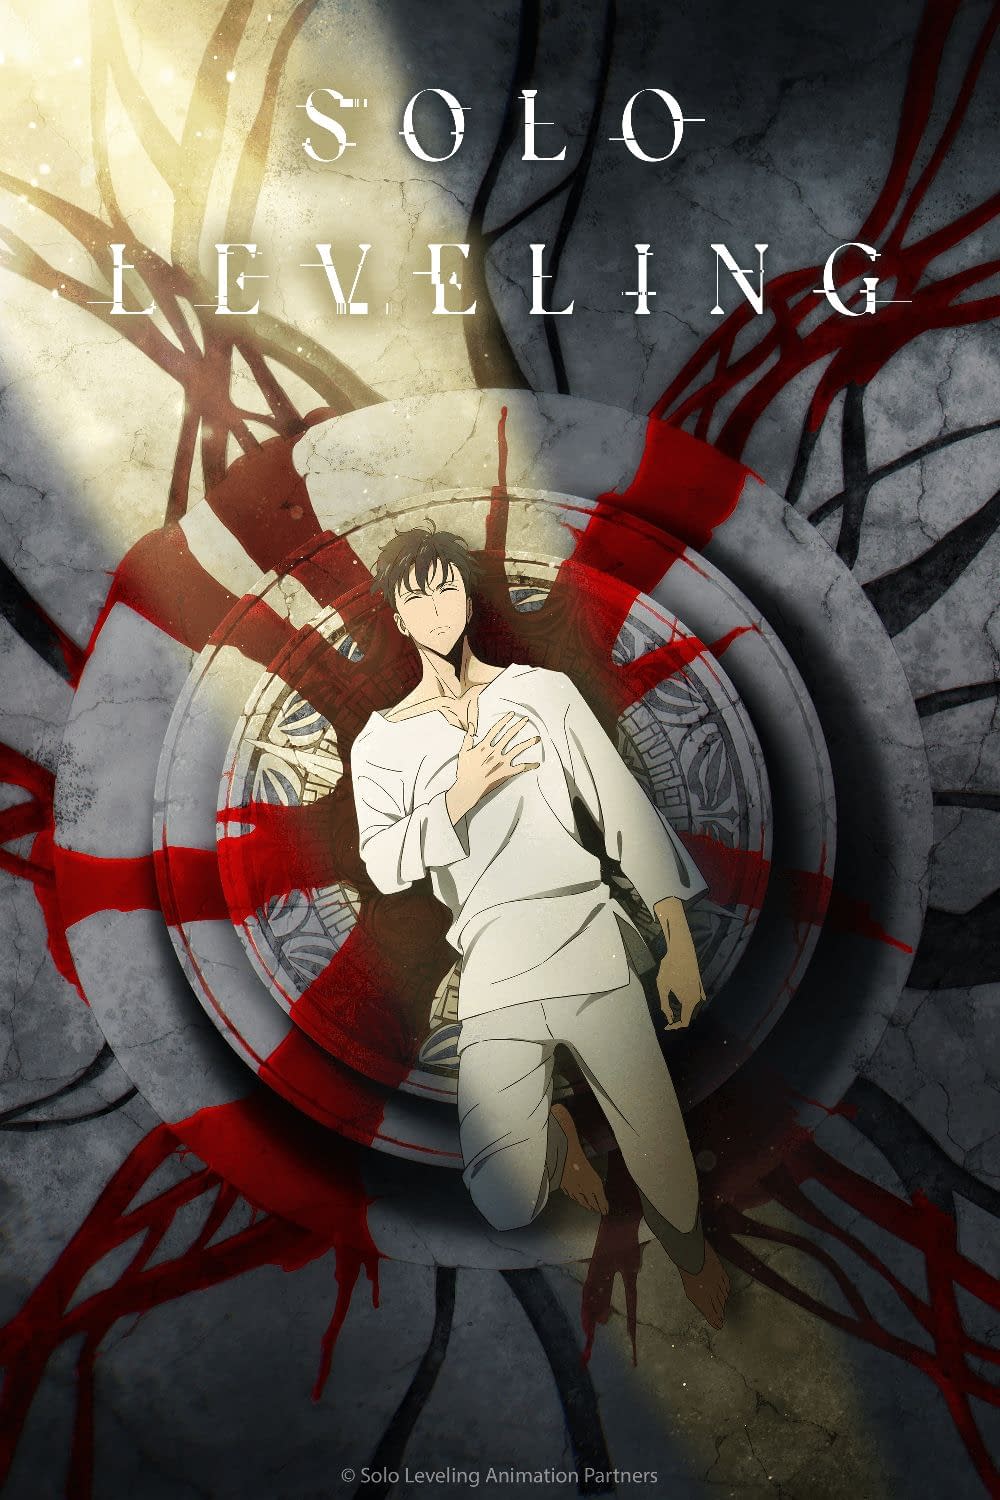 Solo Leveling (Season 2)  Fantasy novel, Novels, Comics